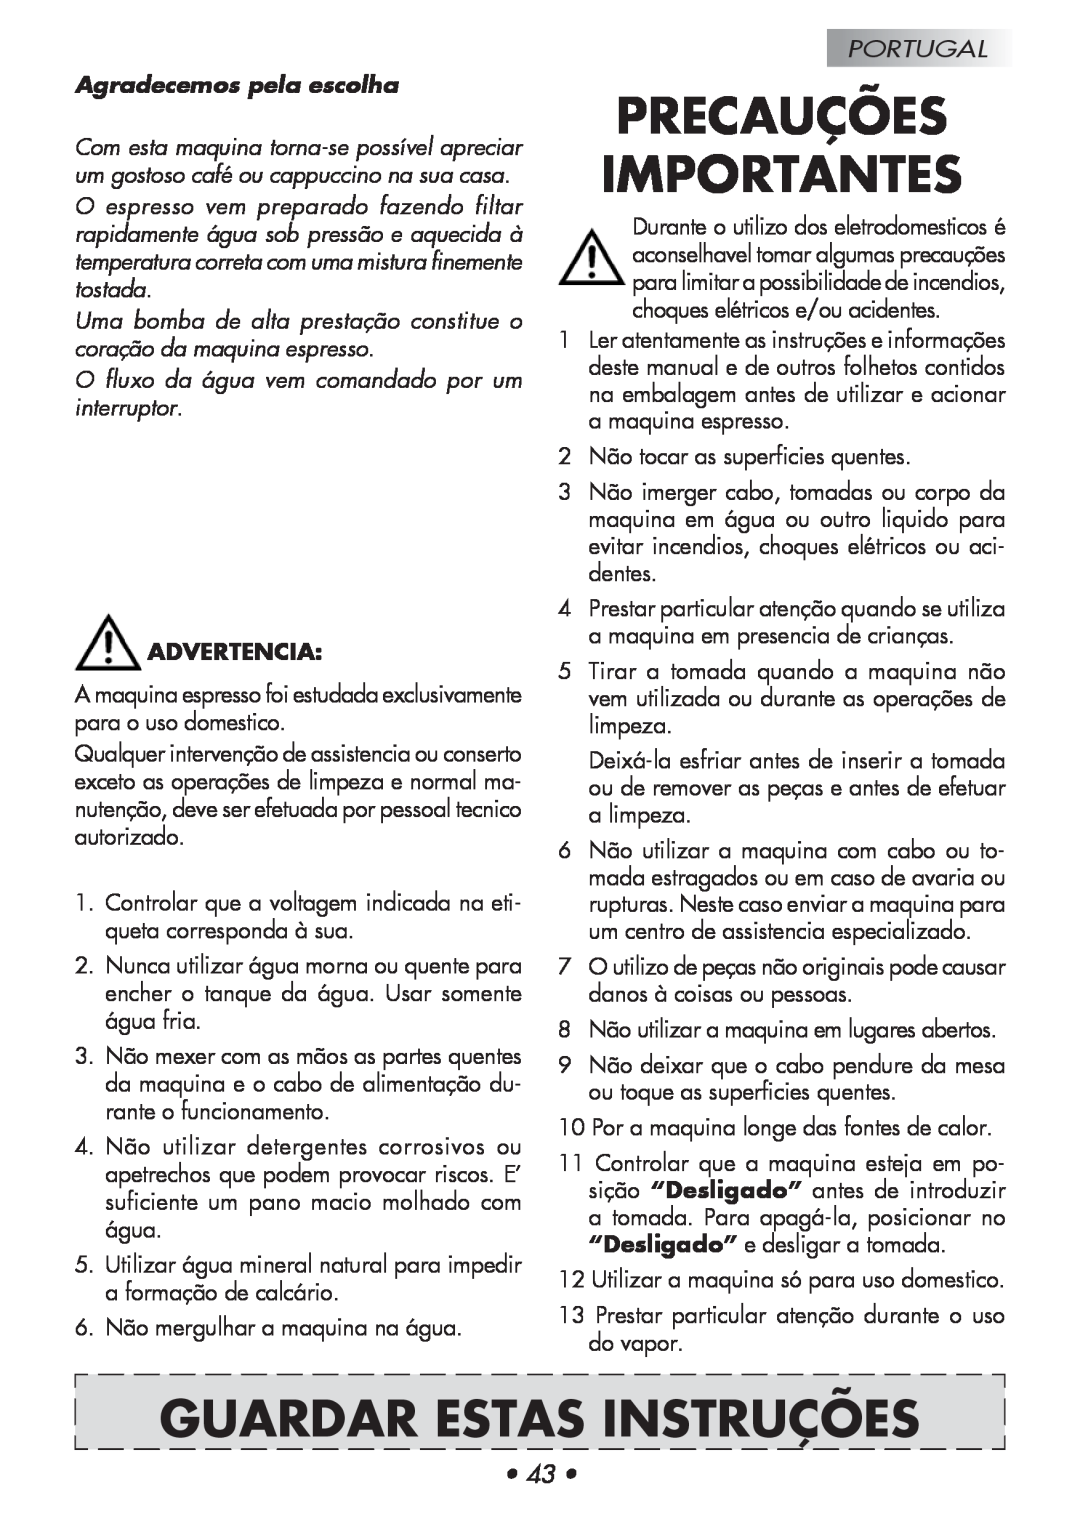 Gaggia 14101-8002 manual Precauções Importantes, Guardar Estas Instruções, Agradecemos pela escolha, Advertencia, Portugal 